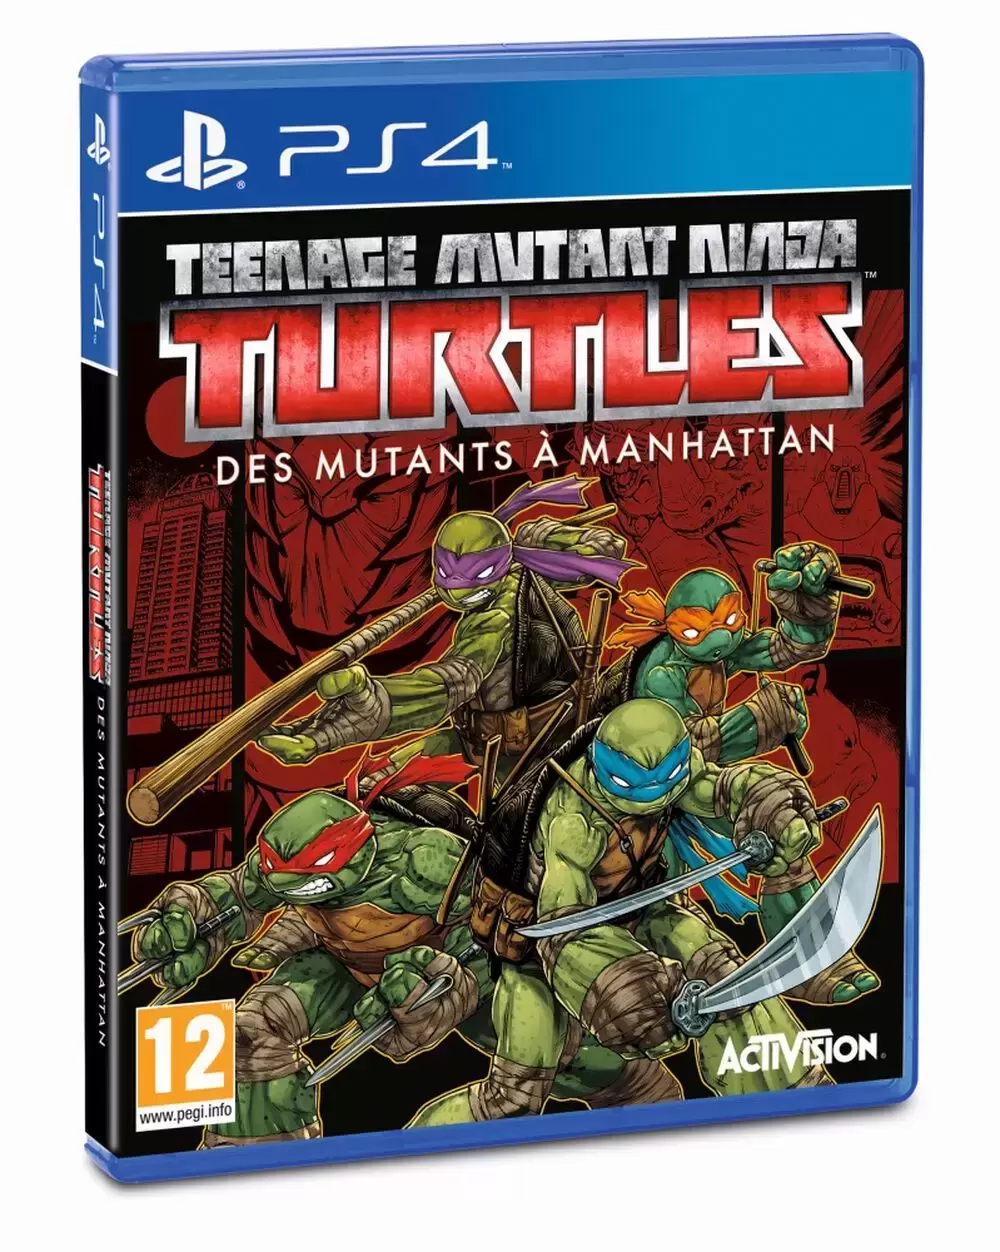 PS4 Games - Teenage Mutant Ninja Turtles: Mutants in Manhattan